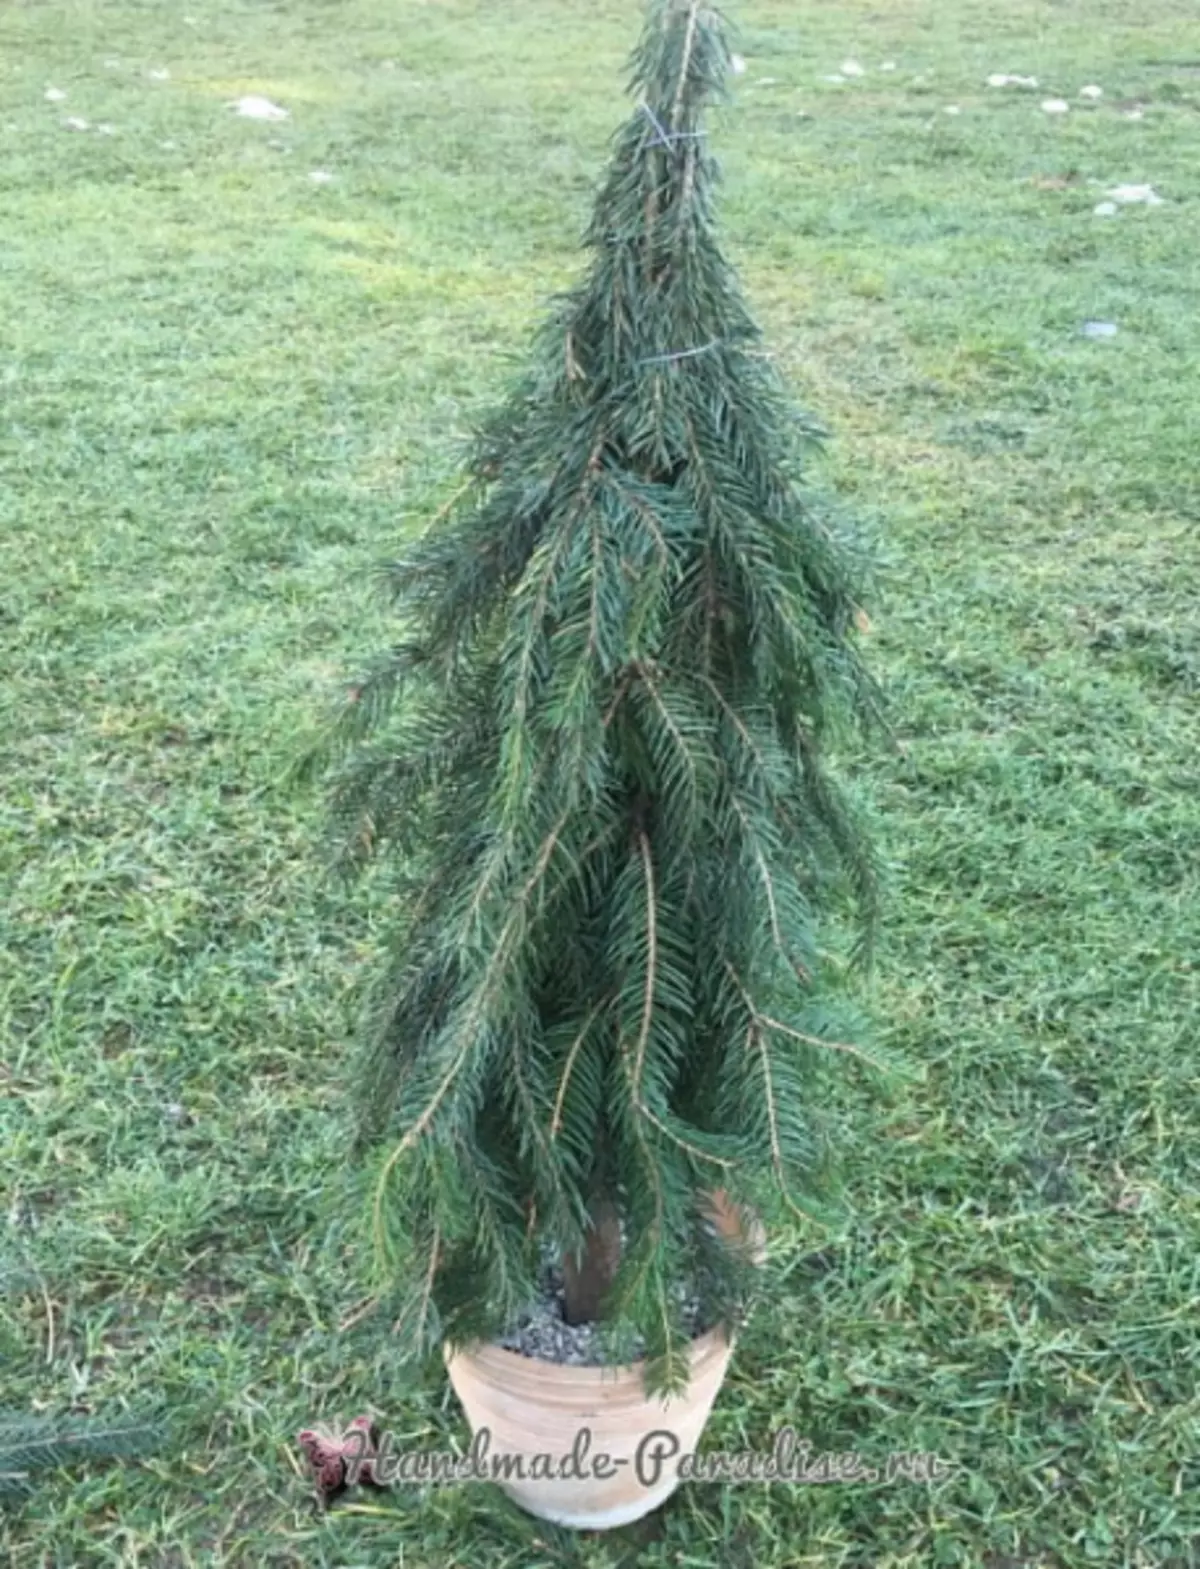 درخت کریسمس با دستان خود را از شاخه های مخروطی